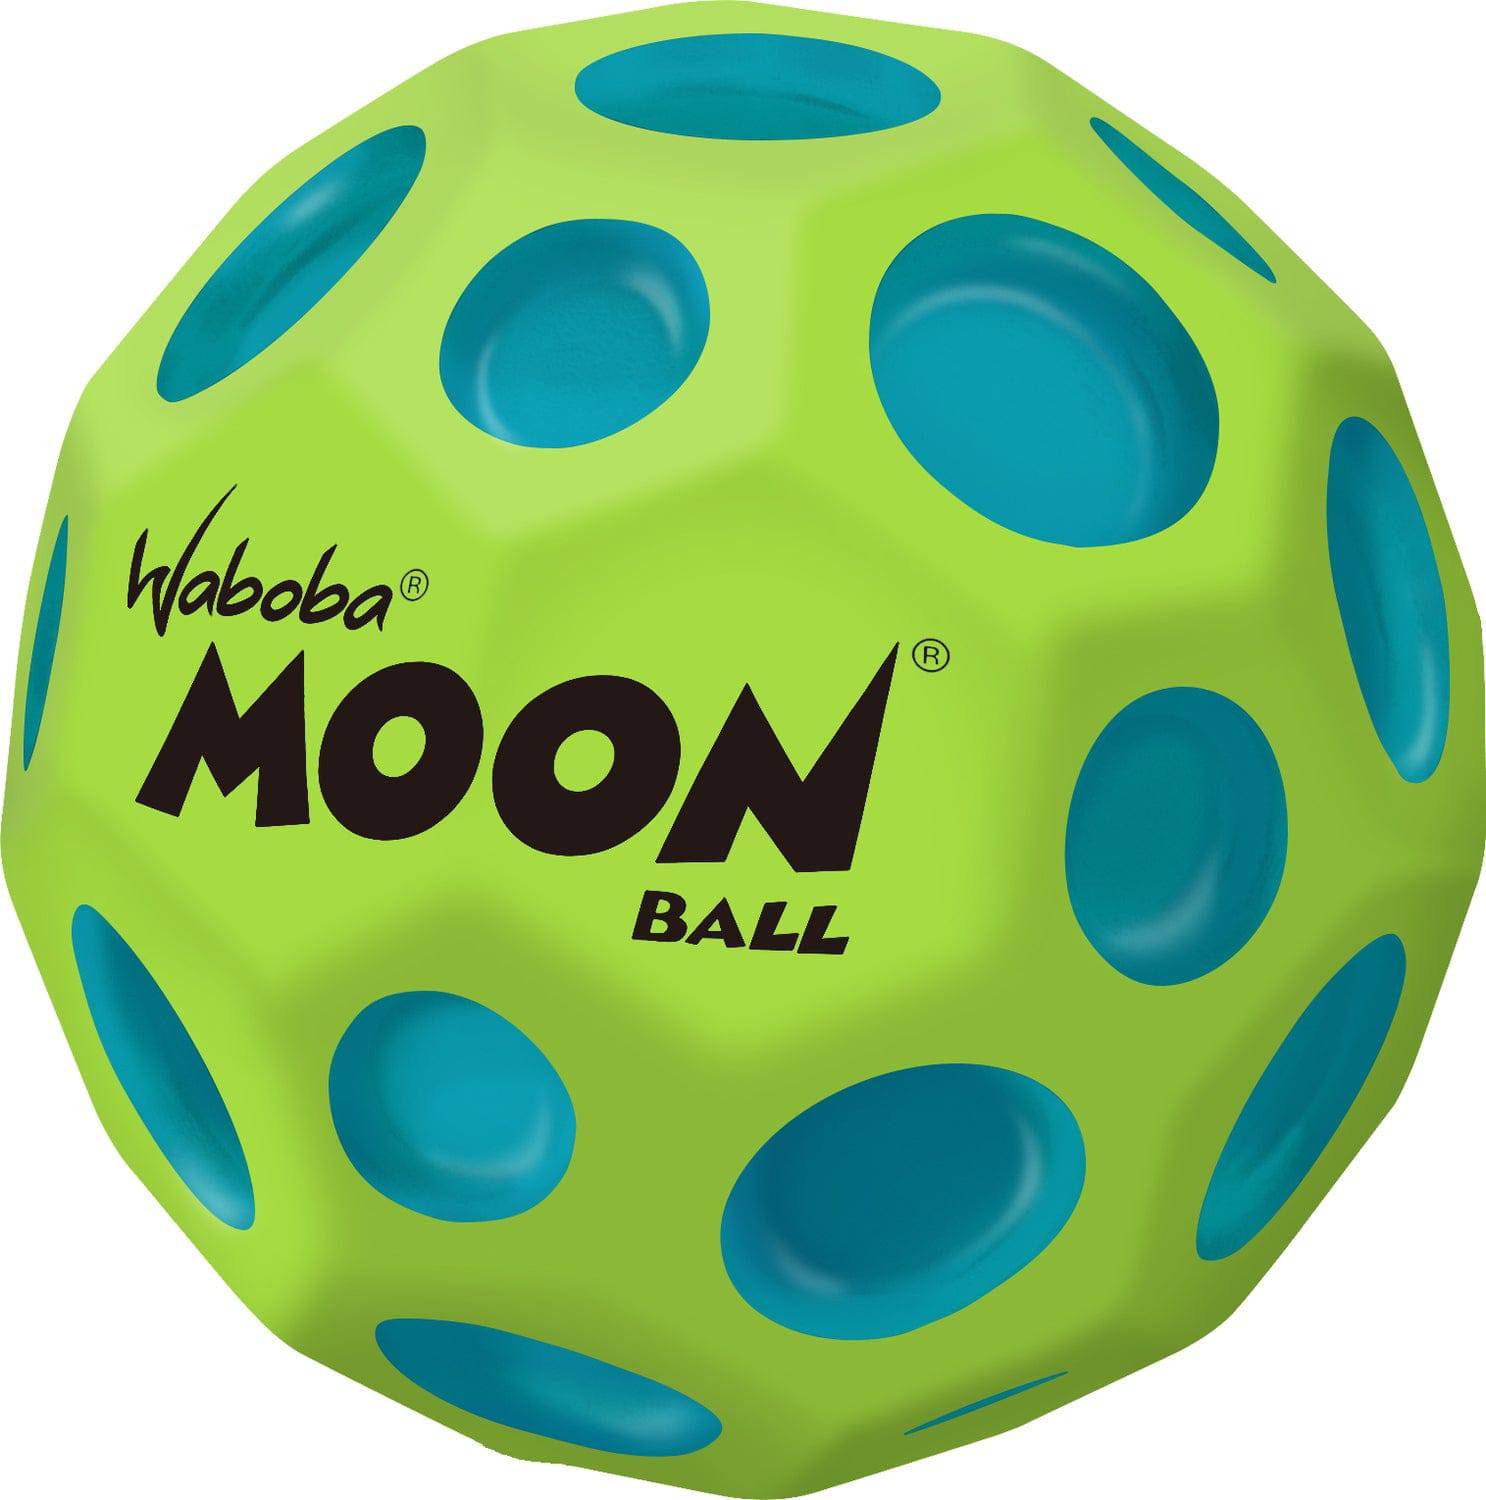 Martian Moon Ball - A Child's Delight